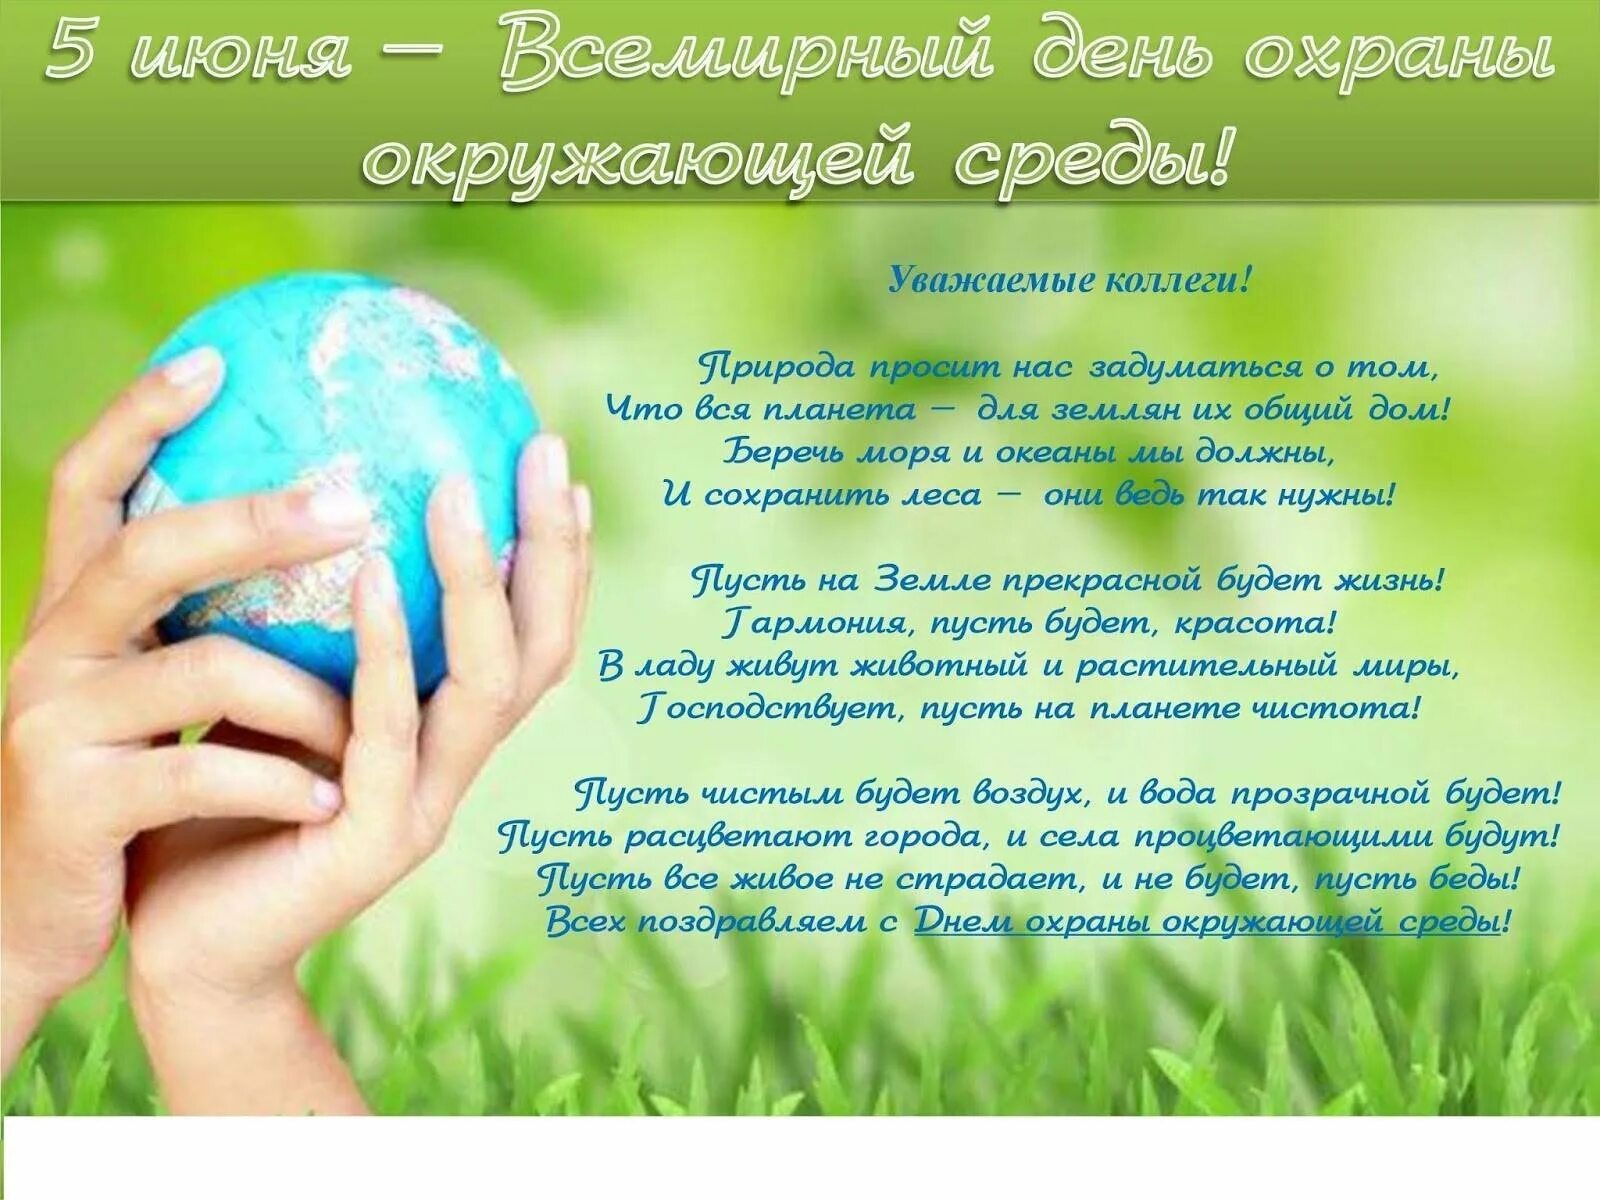 Всемирный день защиты. Всемирный день окружающей среды. Всемирный день охраны окружающей среды. 5 Июня Всемирный день окружающей среды. Всемирный ДЕНЬОКРУЖАЮЩИЙ среды.